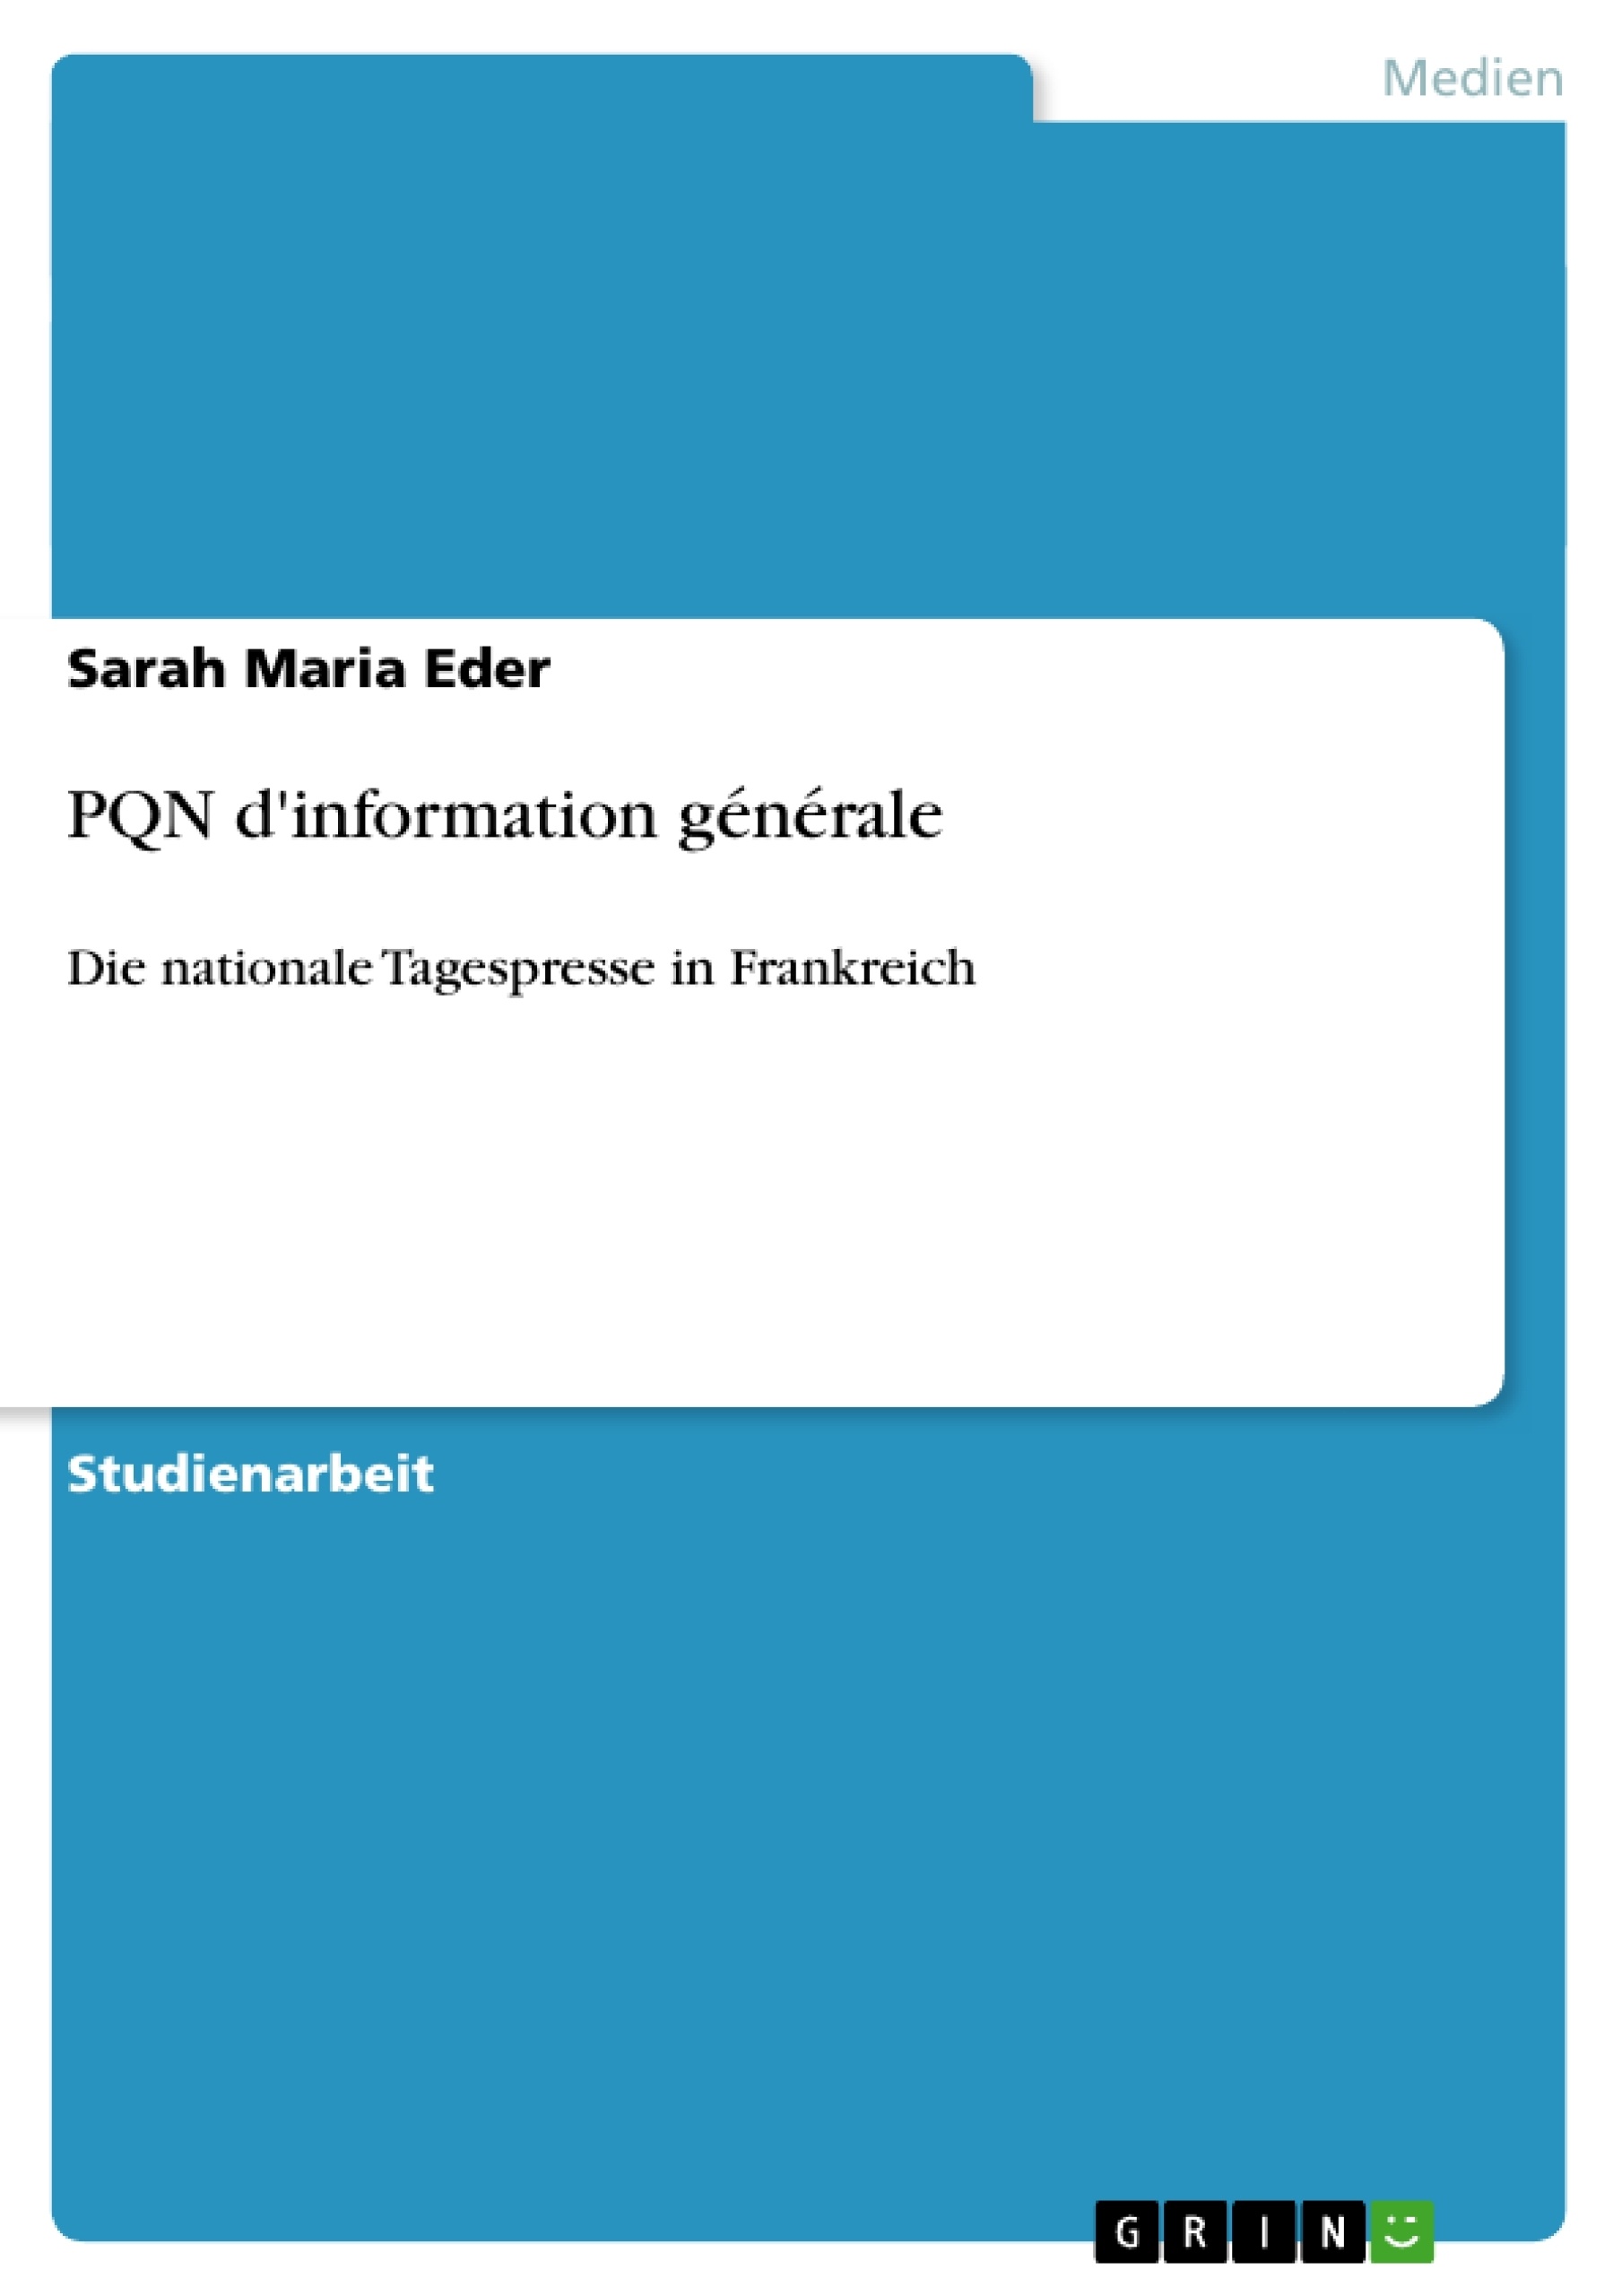 Title: PQN d'information générale